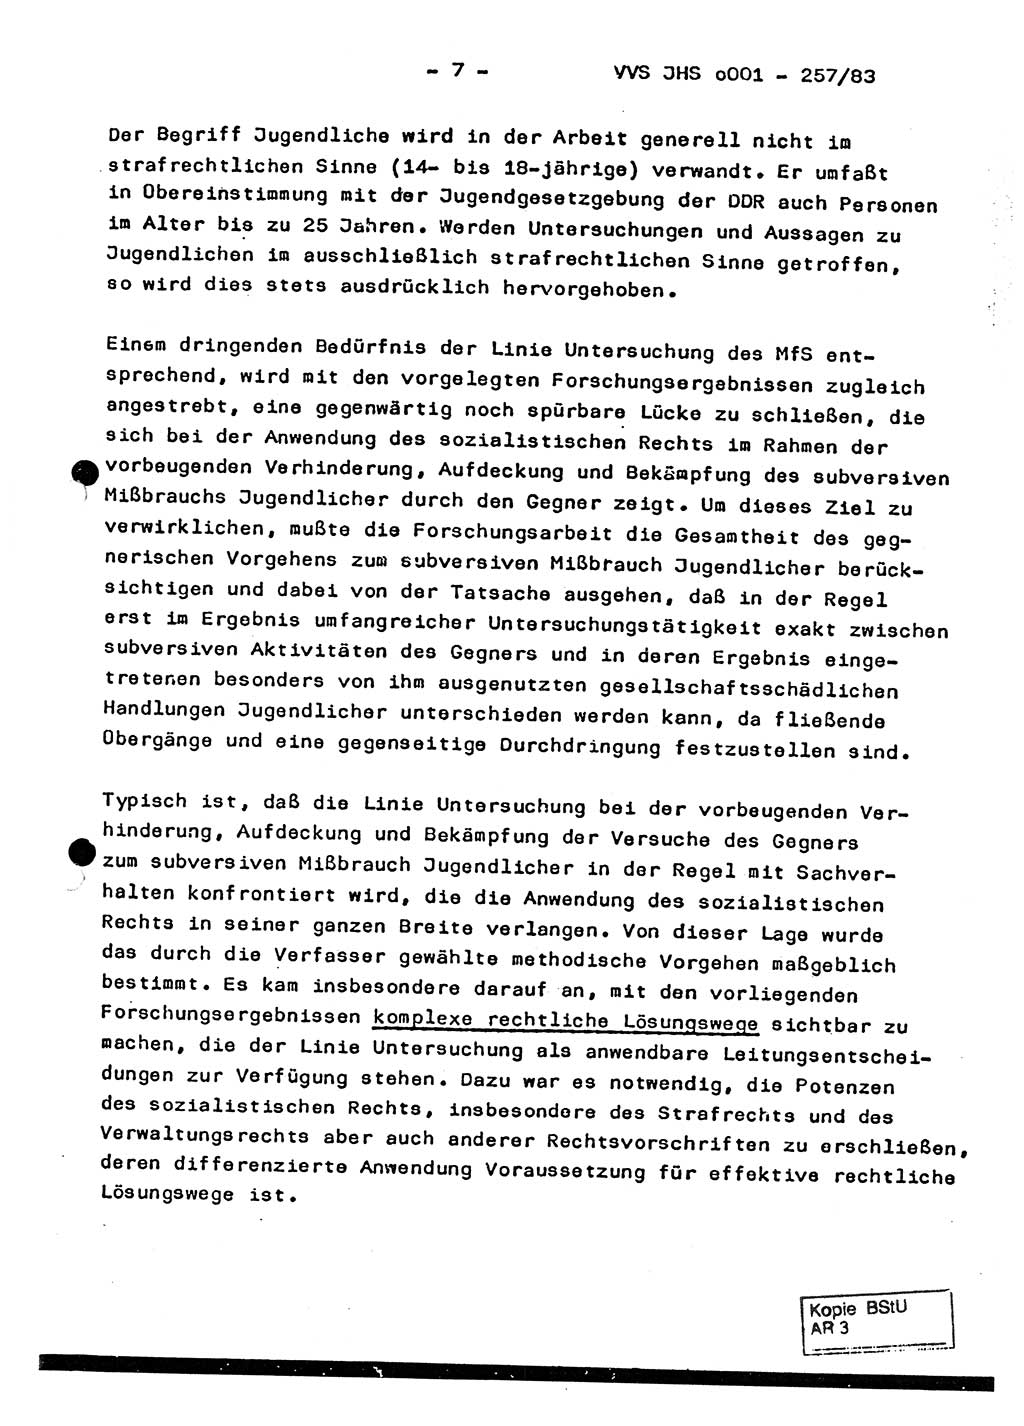 Dissertation, Oberst Helmut Lubas (BV Mdg.), Oberstleutnant Manfred Eschberger (HA IX), Oberleutnant Hans-Jürgen Ludwig (JHS), Ministerium für Staatssicherheit (MfS) [Deutsche Demokratische Republik (DDR)], Juristische Hochschule (JHS), Vertrauliche Verschlußsache (VVS) o001-257/83, Potsdam 1983, Seite 7 (Diss. MfS DDR JHS VVS o001-257/83 1983, S. 7)